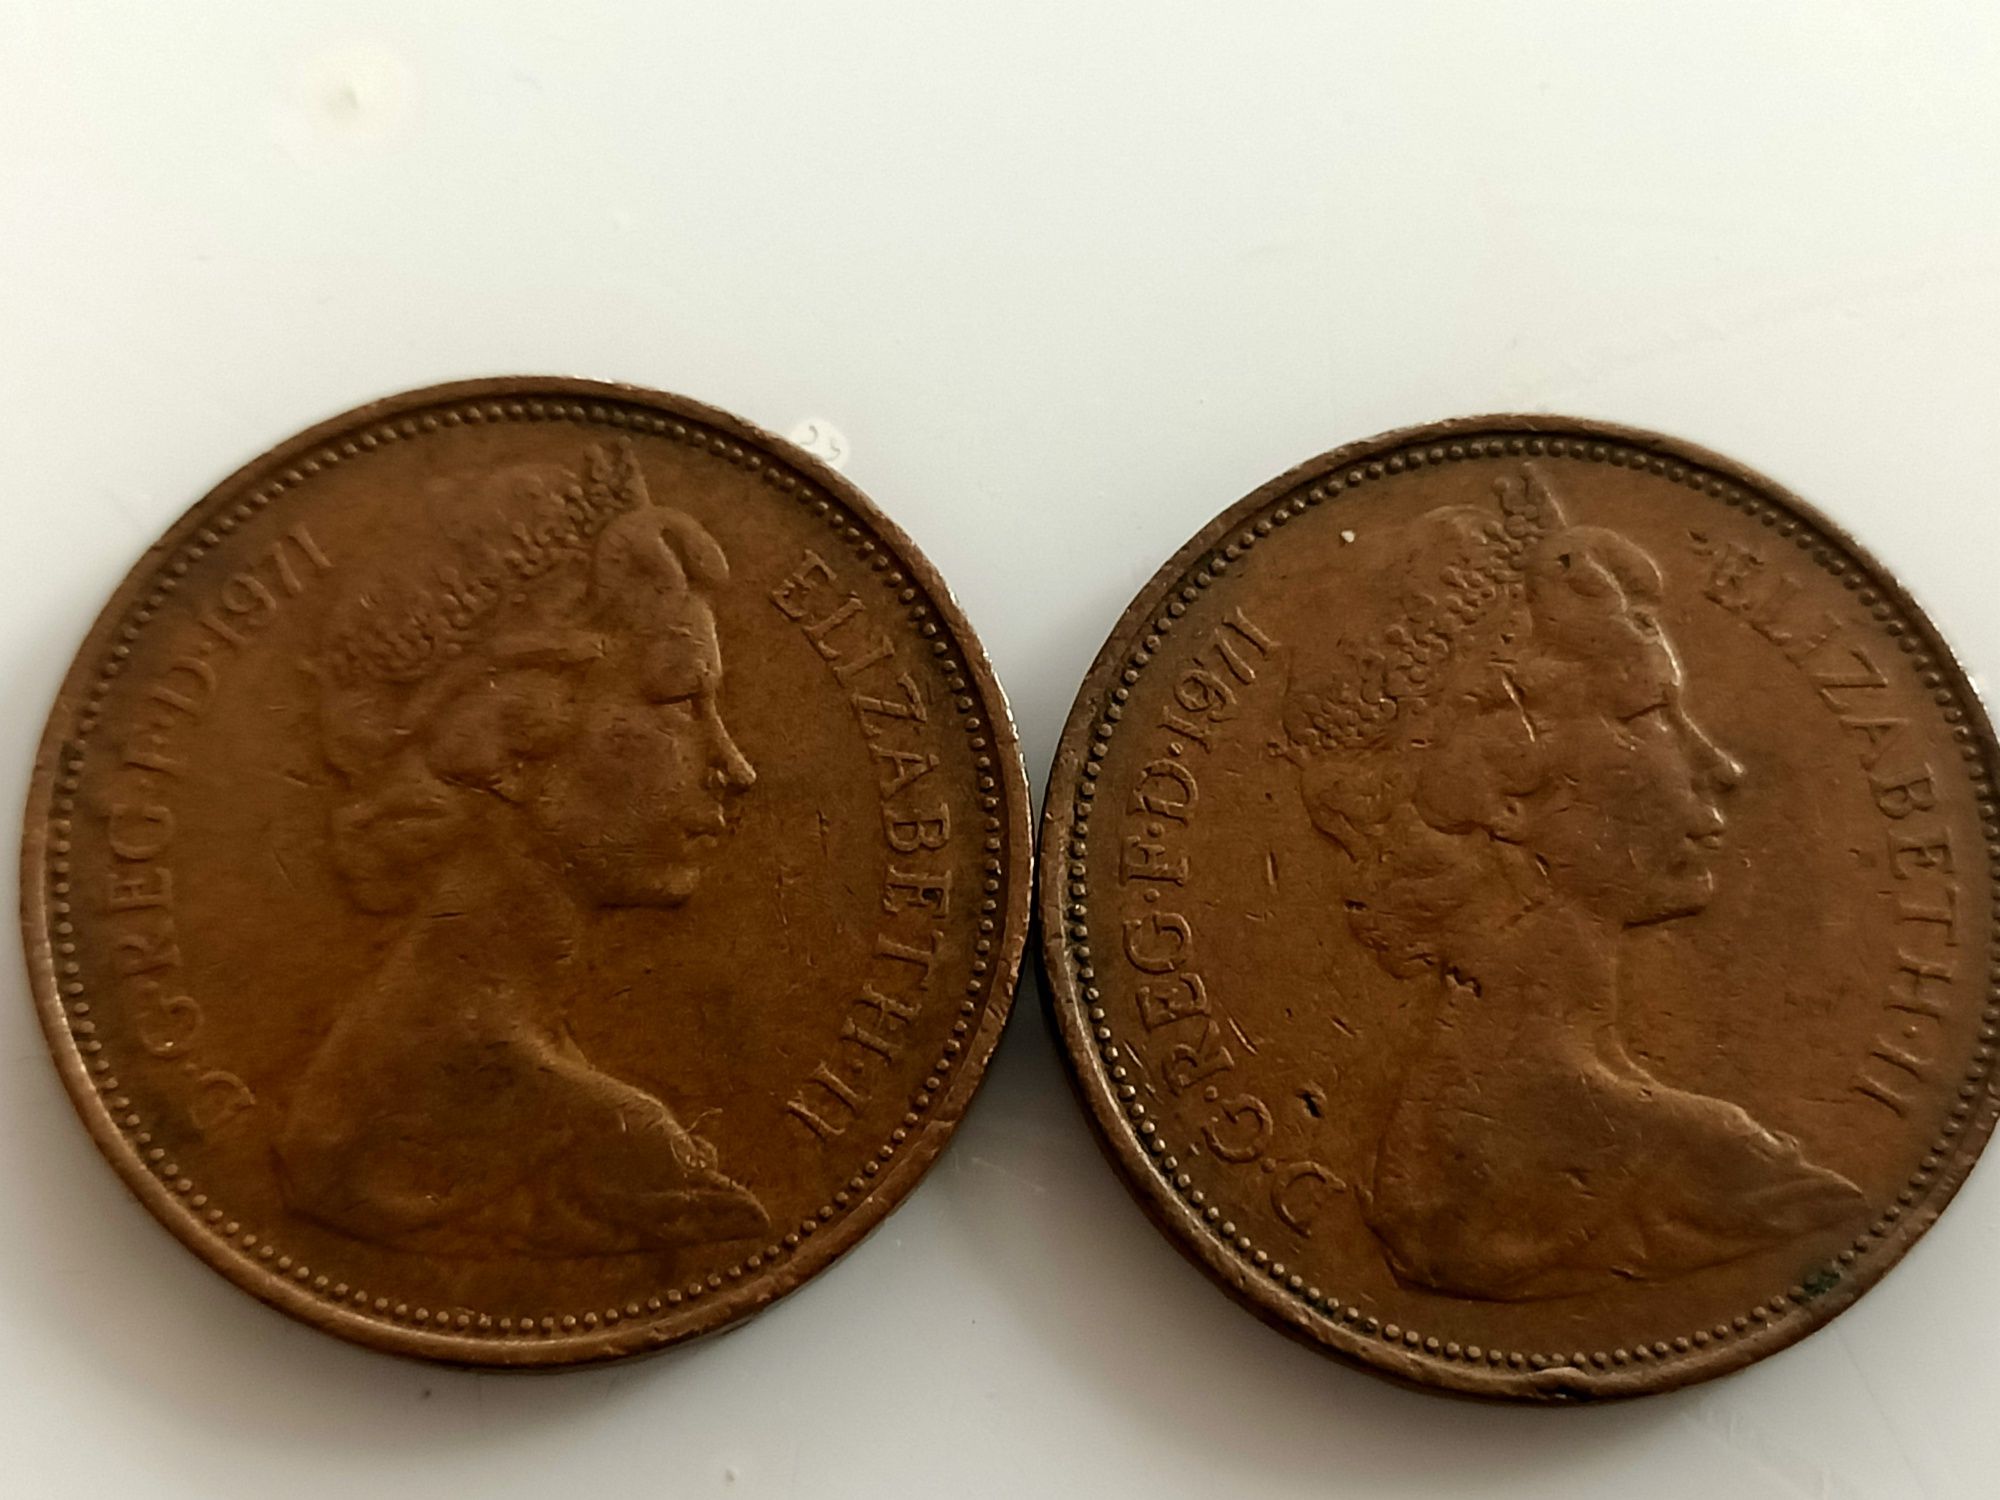 2 pence 1971 Elizabeth II